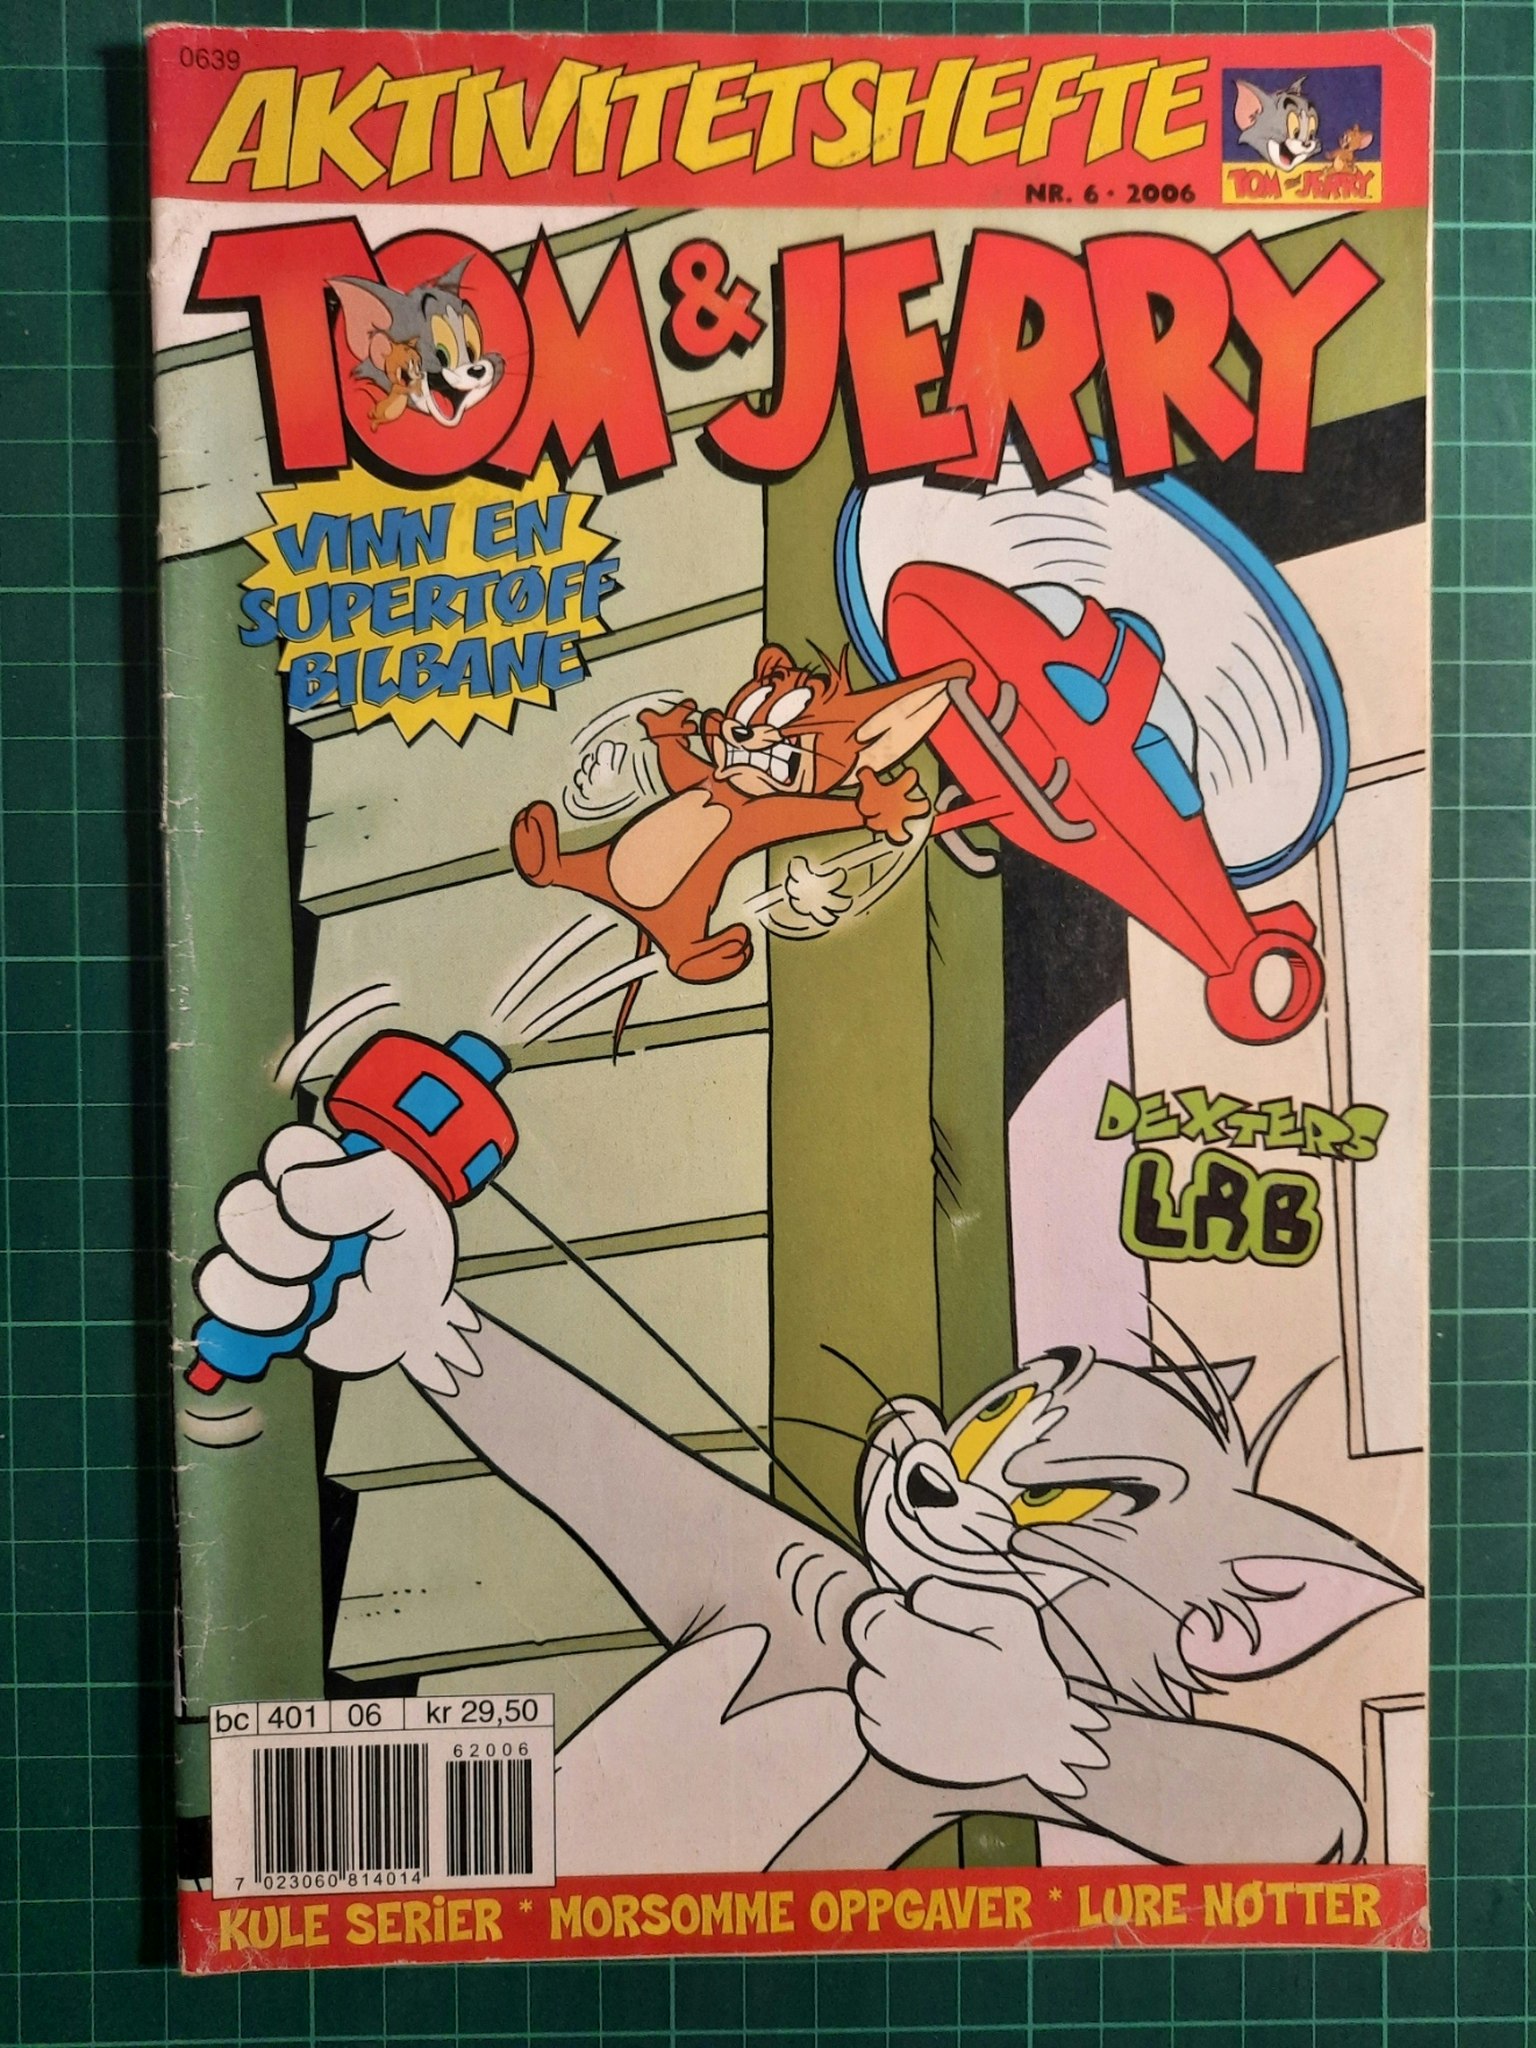 Tom og Jerry aktivitetshefte 2006 - 06